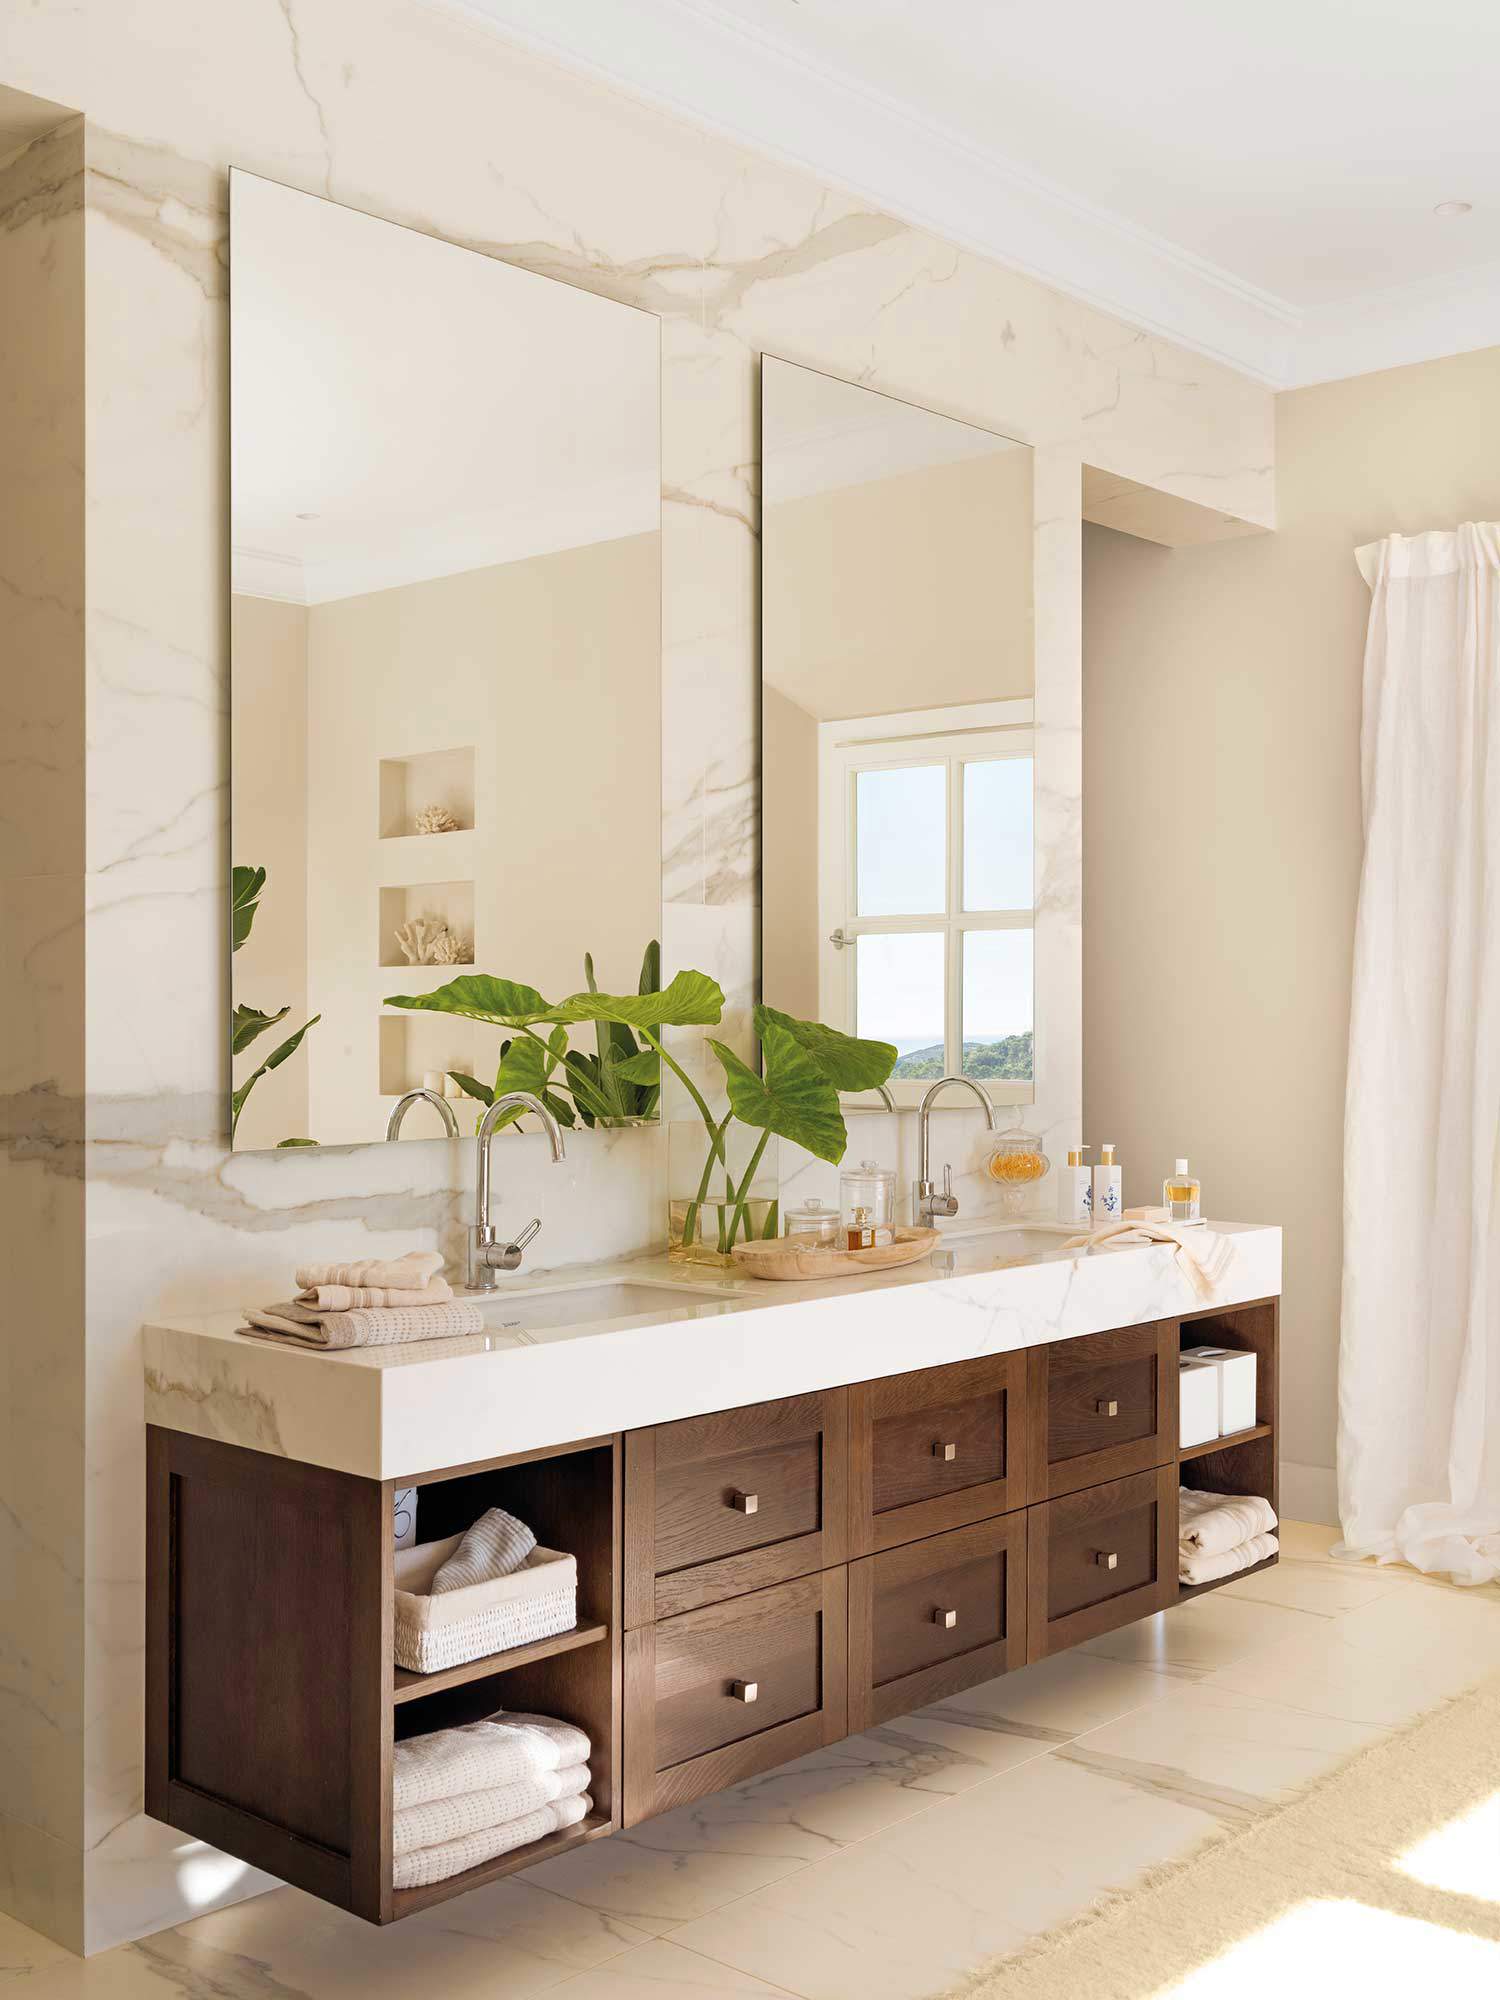 Baño con mueble de madera volado con cajones, encimera de mármol y espejos grandes. 